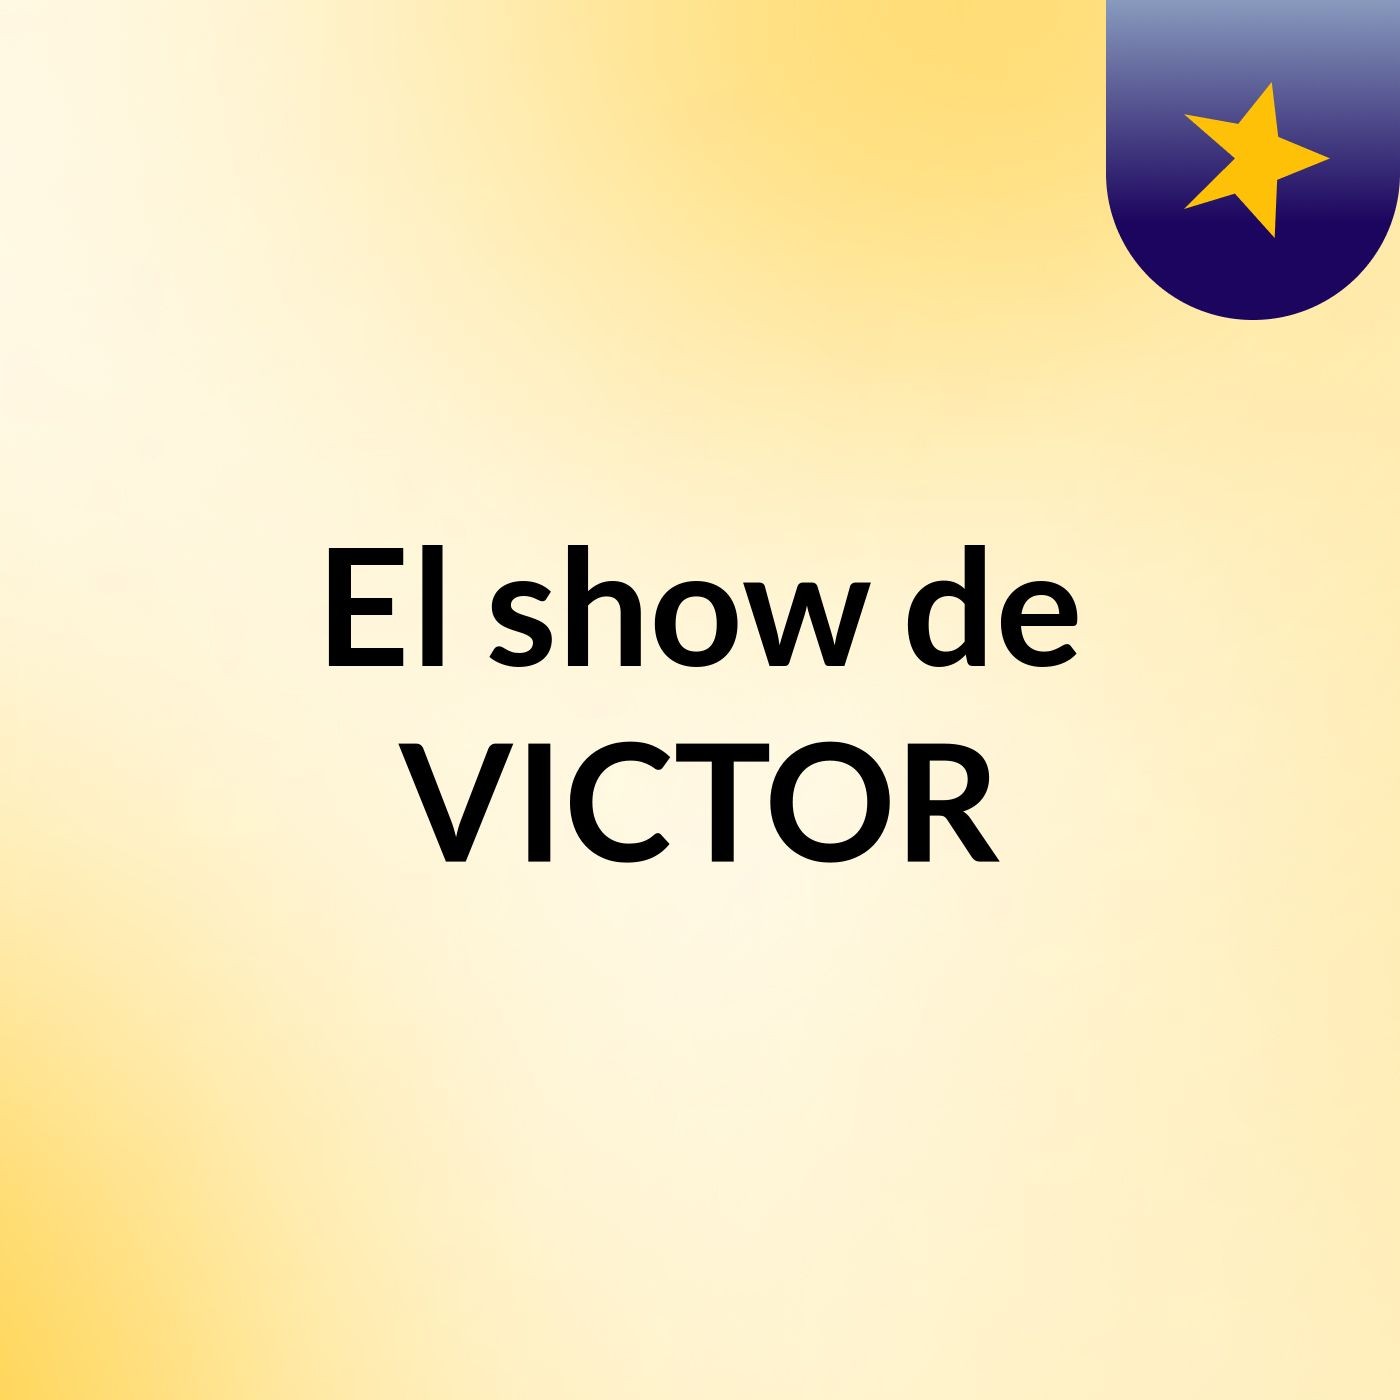 El show de VICTOR